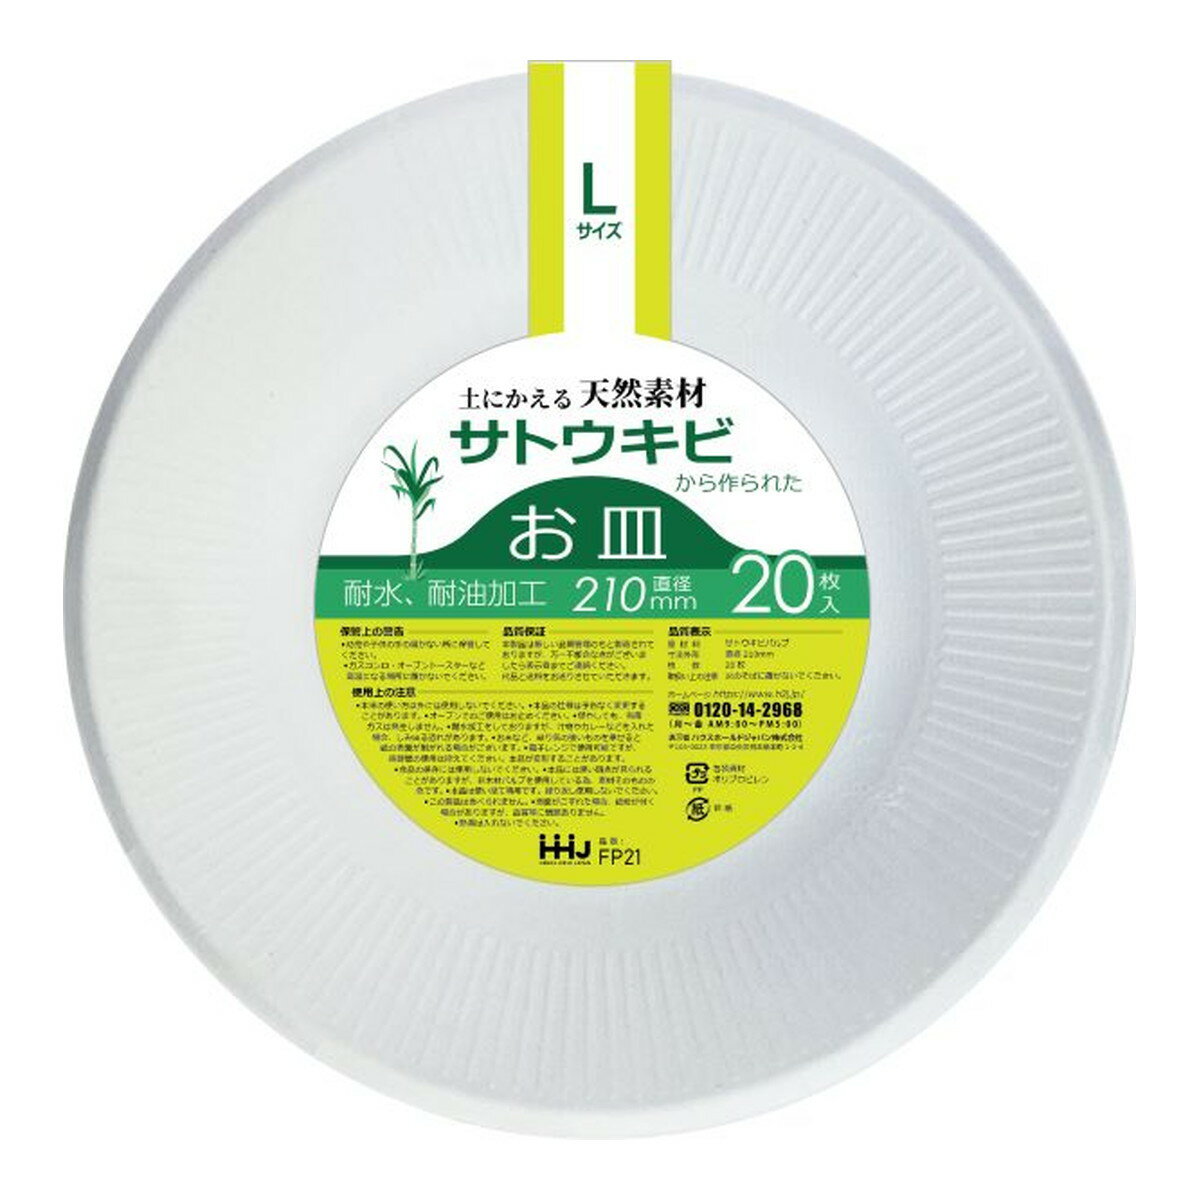 【令和・早い者勝ちセール】ハウスホールドジャパン FP21 土にかえる天然素材から作られた バガスお皿 Lサイズ 20枚入